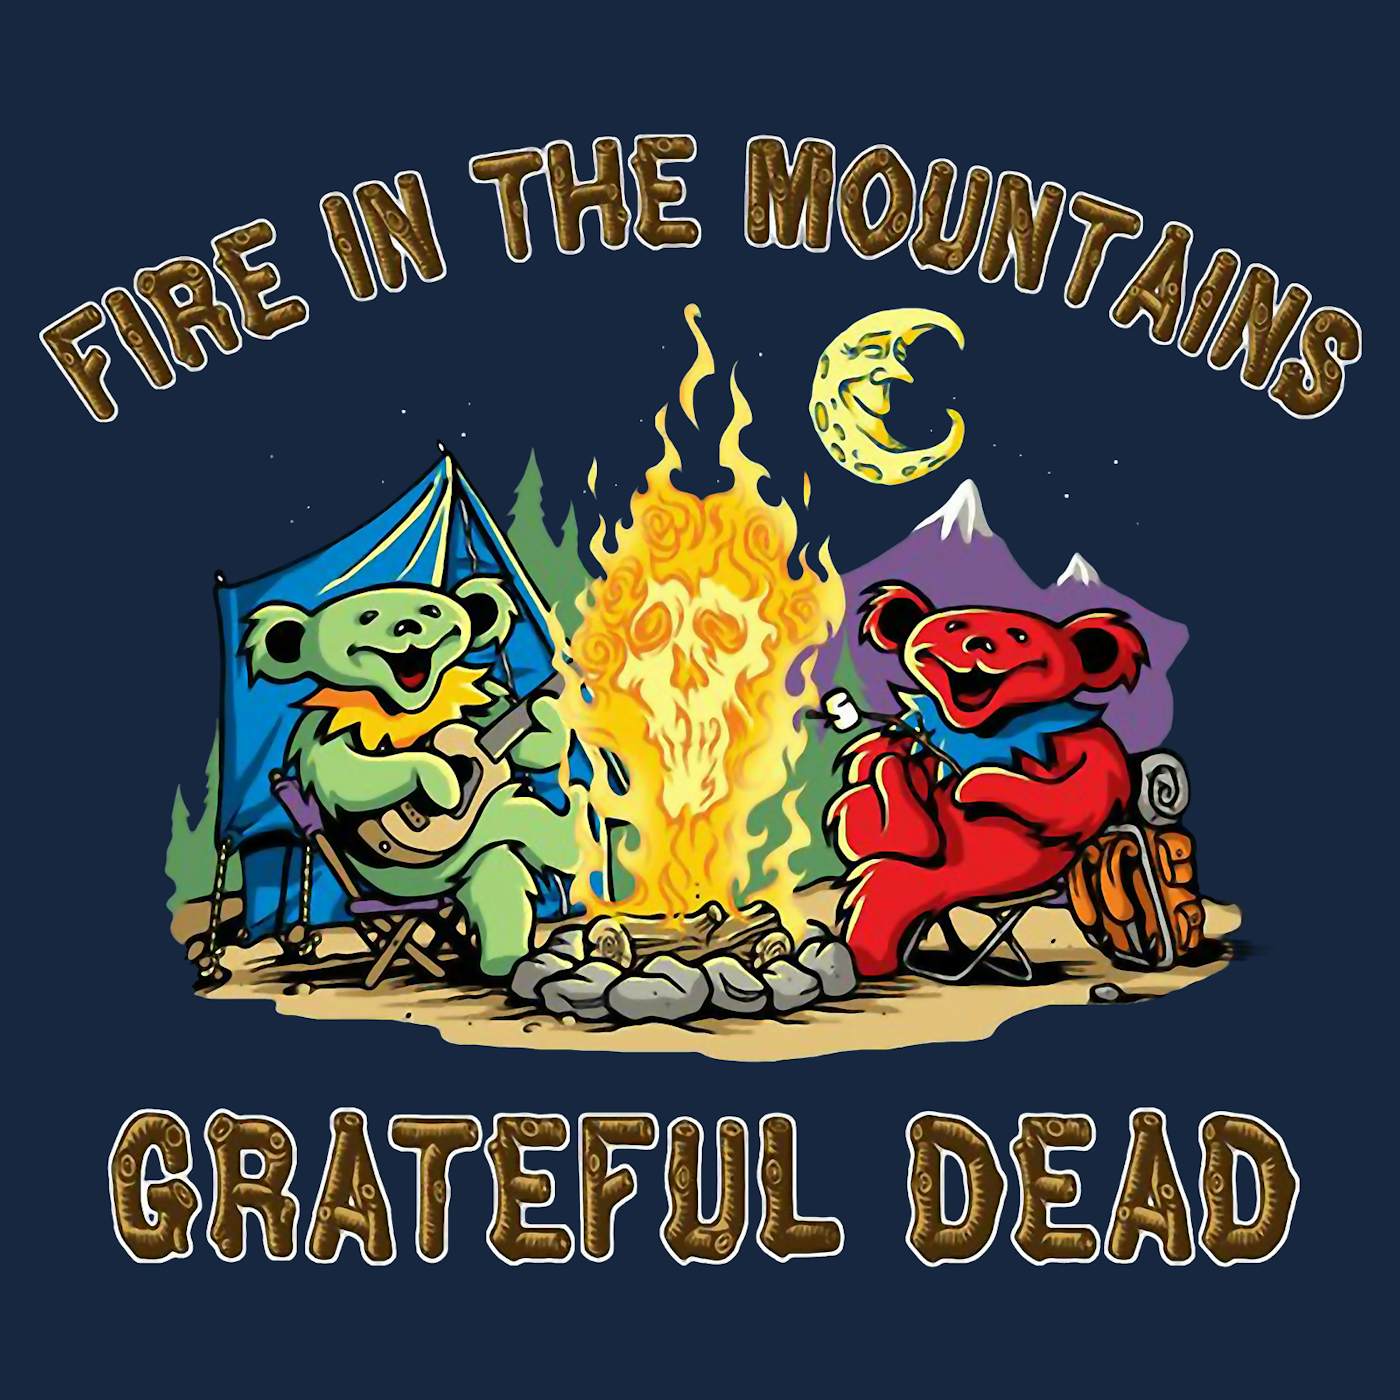 Grateful Dead - Bobby O Bear T-Shirt Black